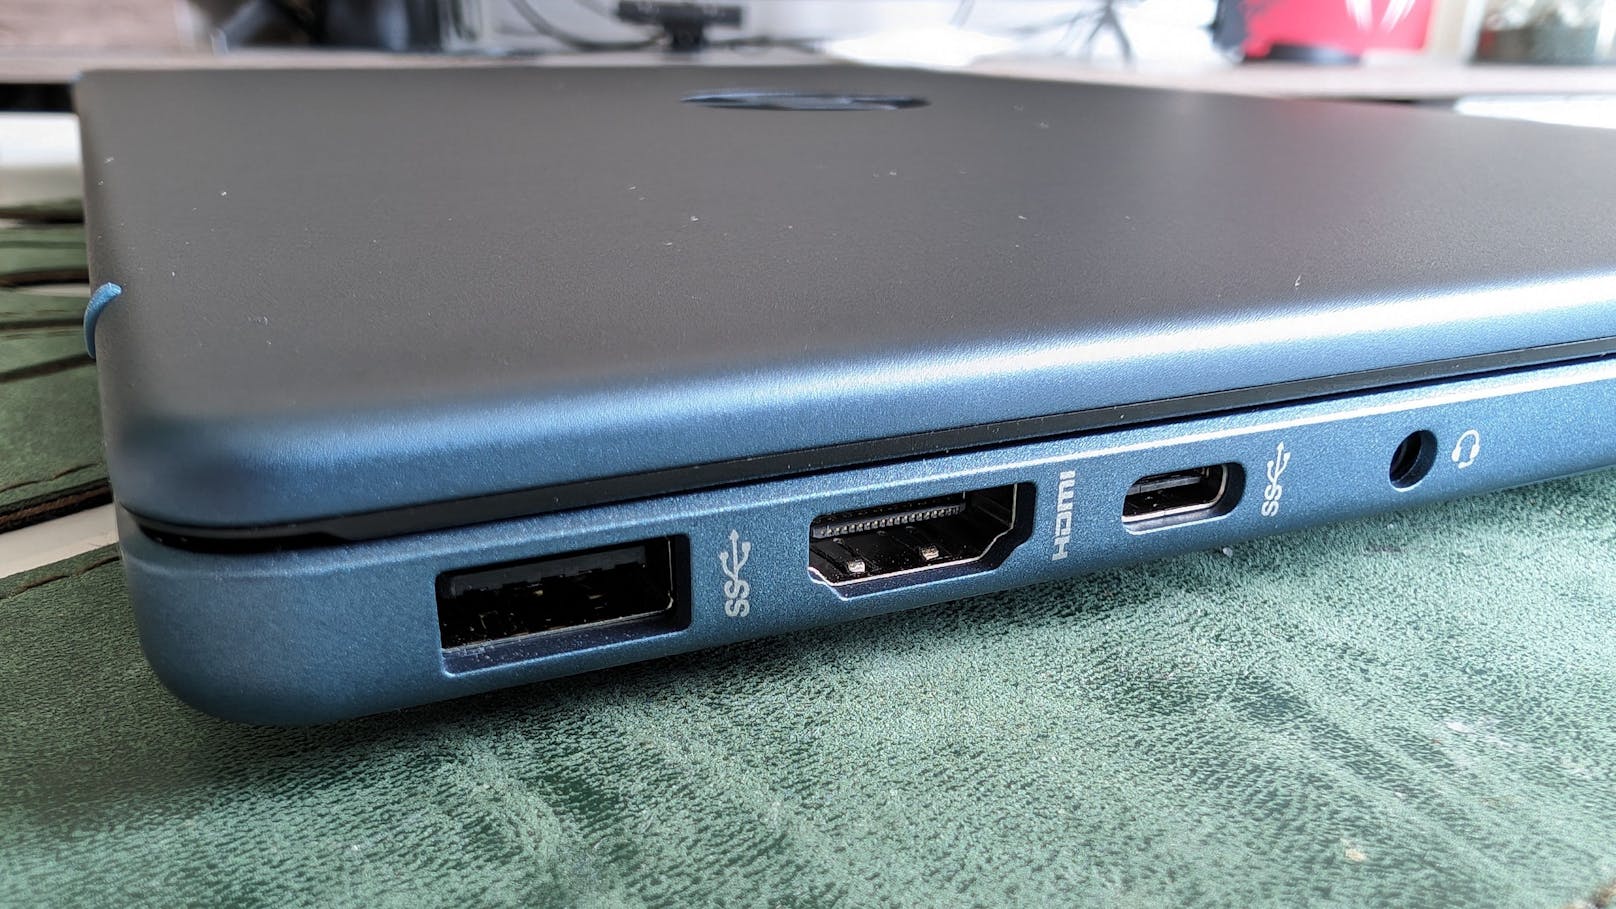 Schade: Der zusätzliche USB-C-Anschluss unterstützt nur Datenübertragung, nicht Laden oder die Verbindung zu externen Monitoren.